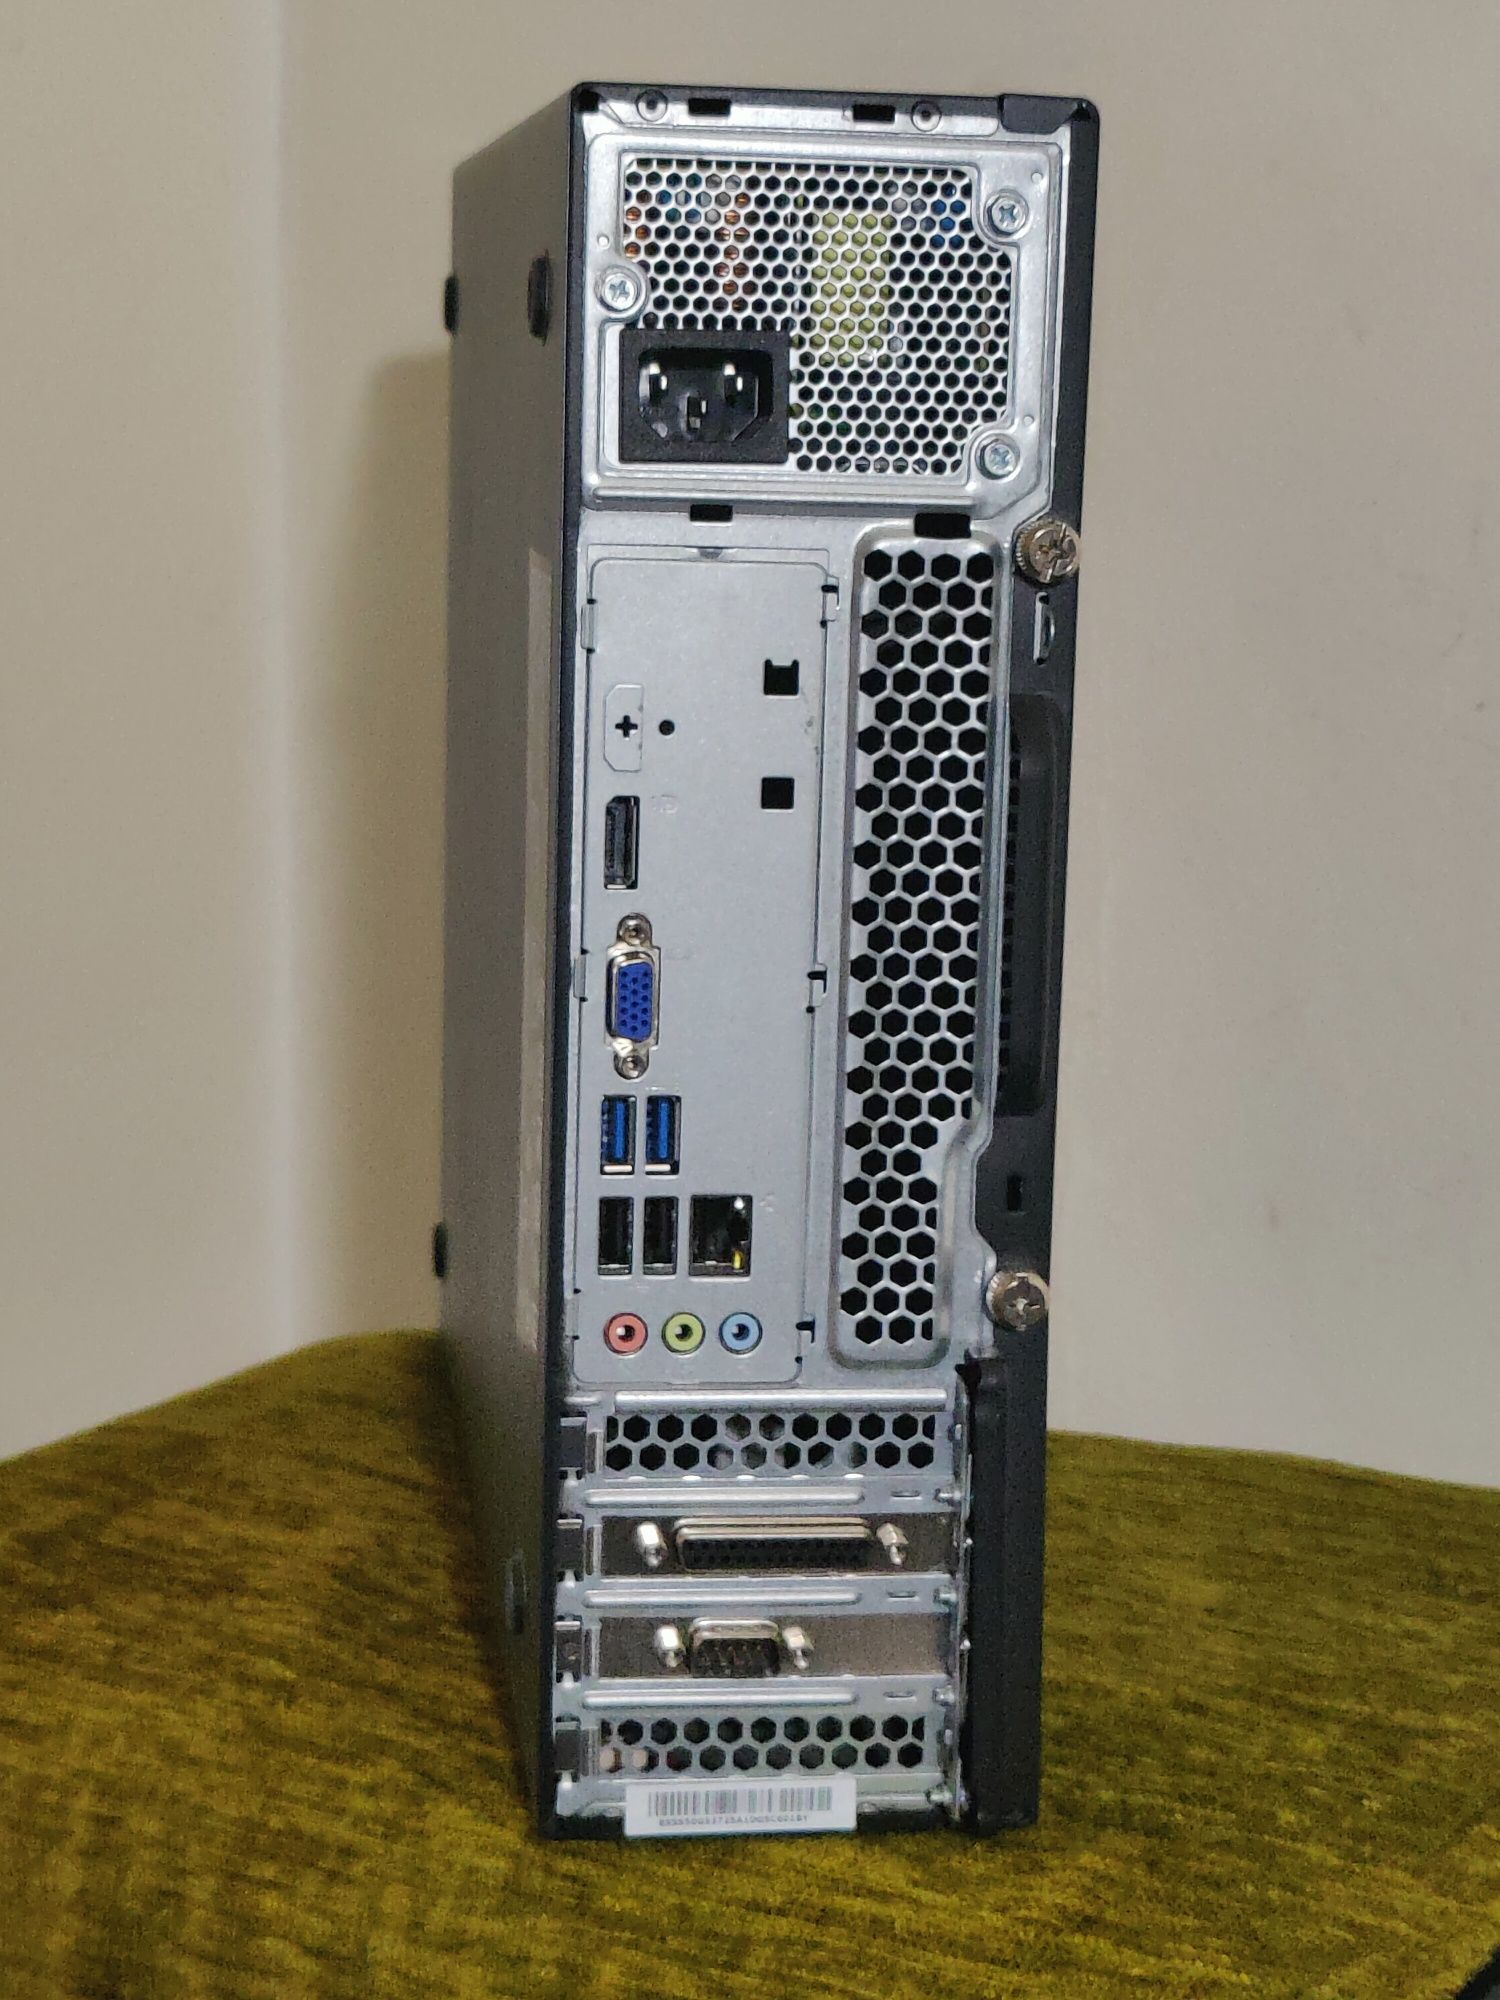 Calculator PC Lenovo Thinkcentre E73, sff, procesor Intel core i5-4570